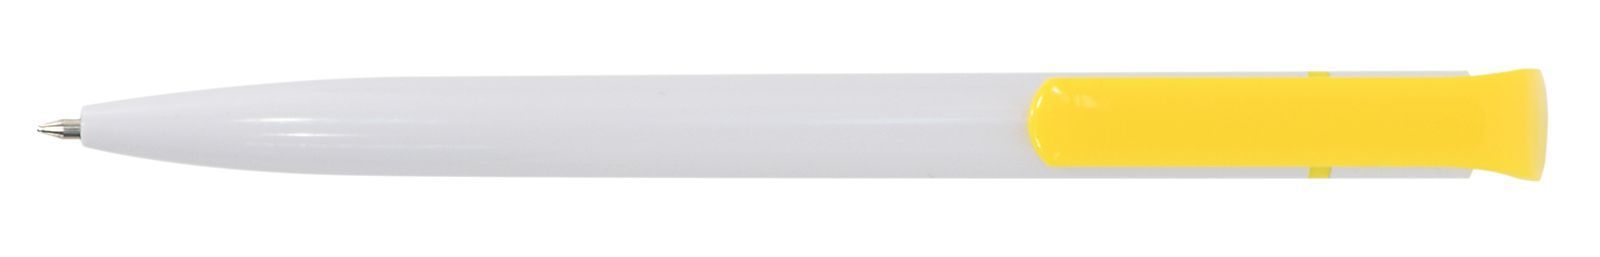 Ручка для логотипа шариковая автоматическая INFORMAT НИКА 0,7 мм, синяя, бело-желтый корпус